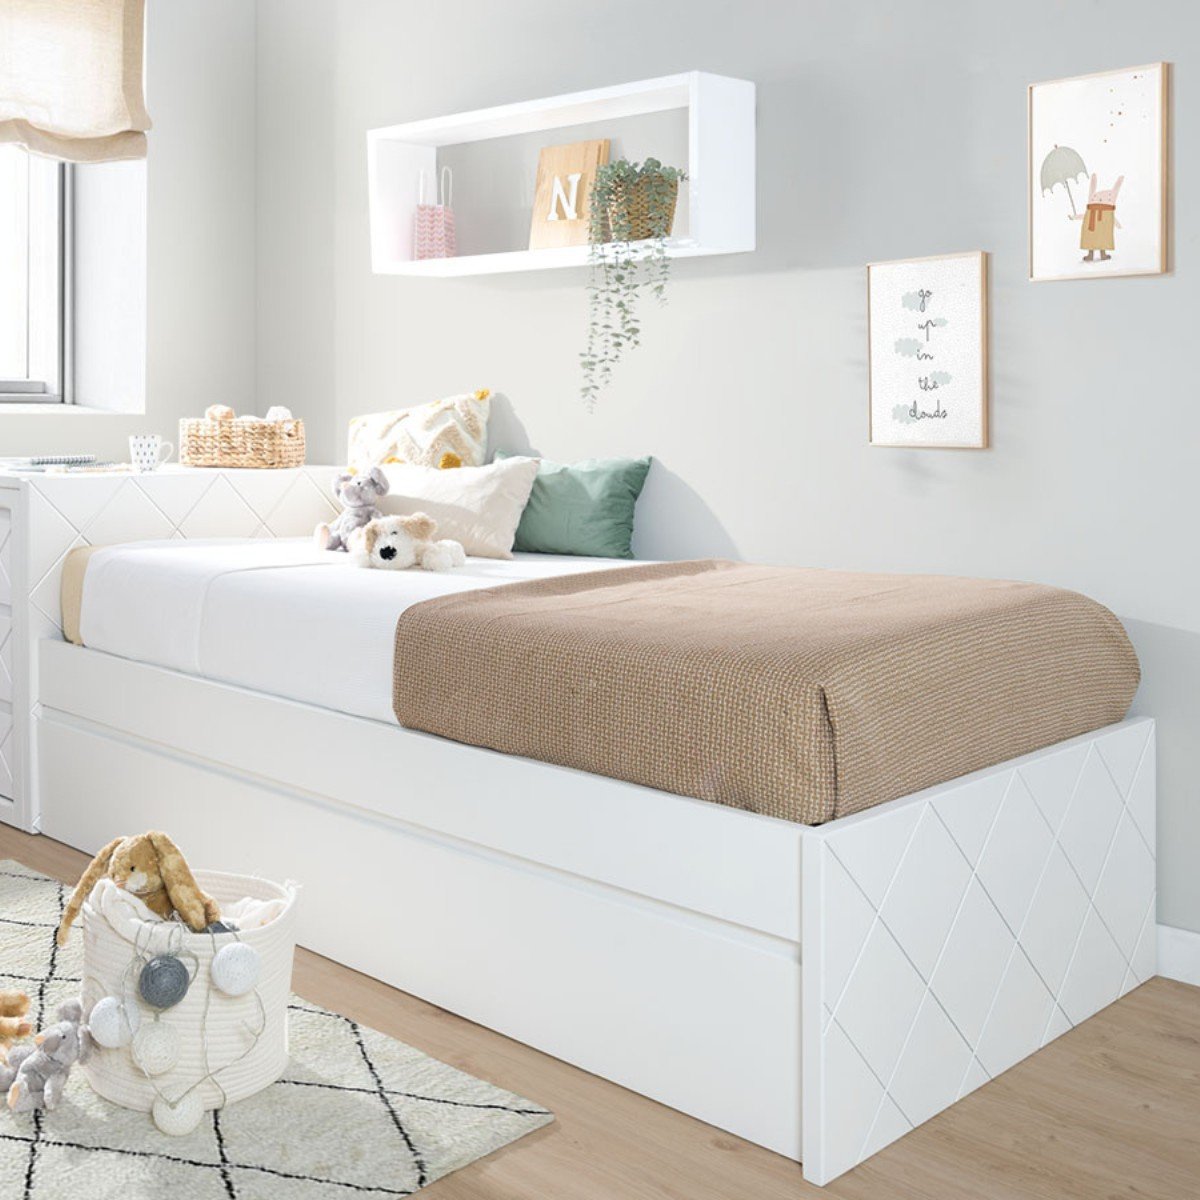 Elegante cama individual de diseño 90x190 con 2 cajones bajo cama